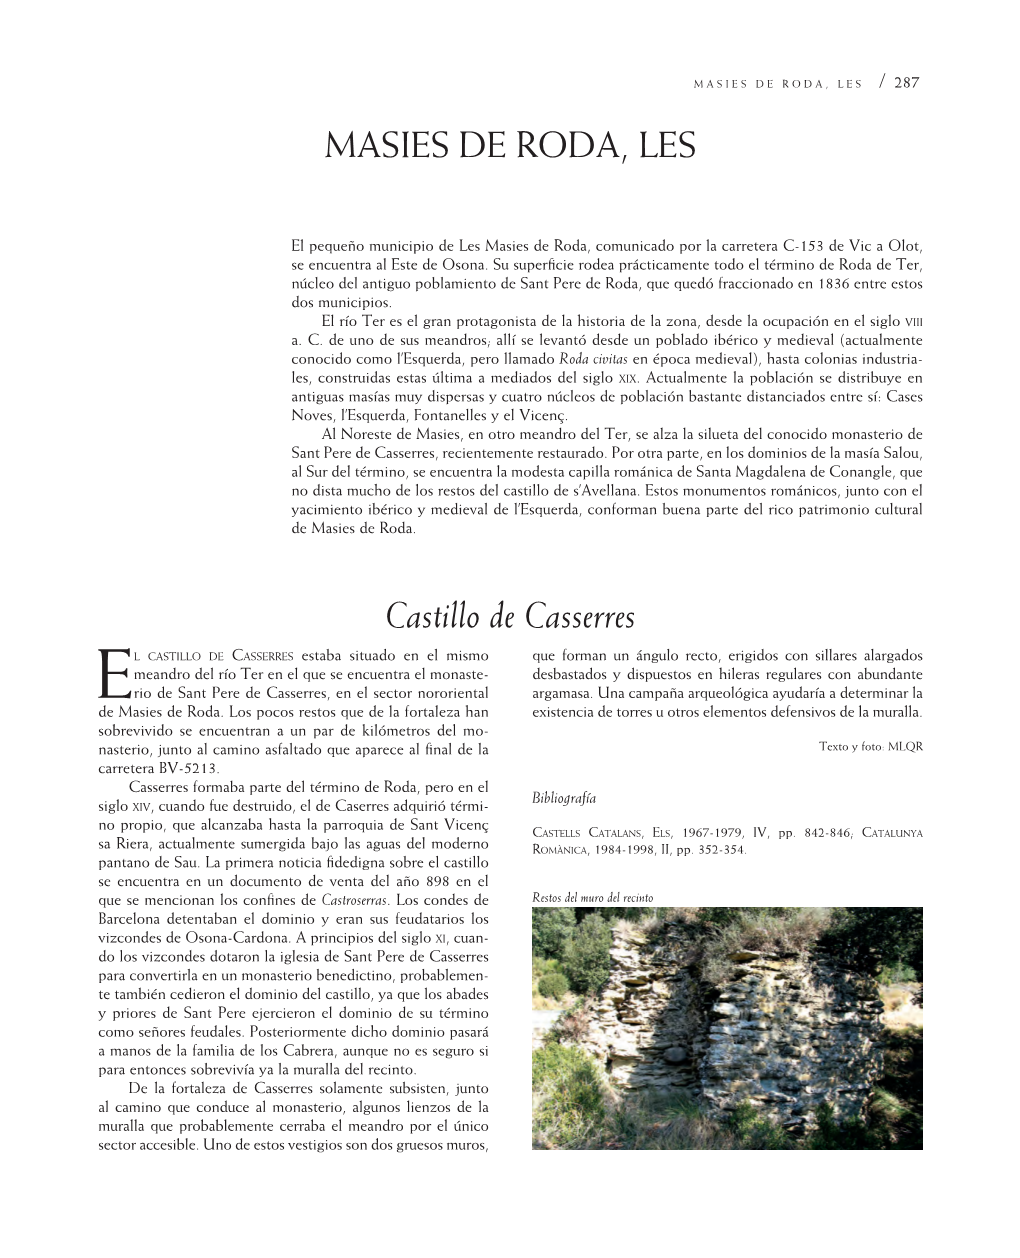 Masies DE Roda, Les Castillo De Casserres